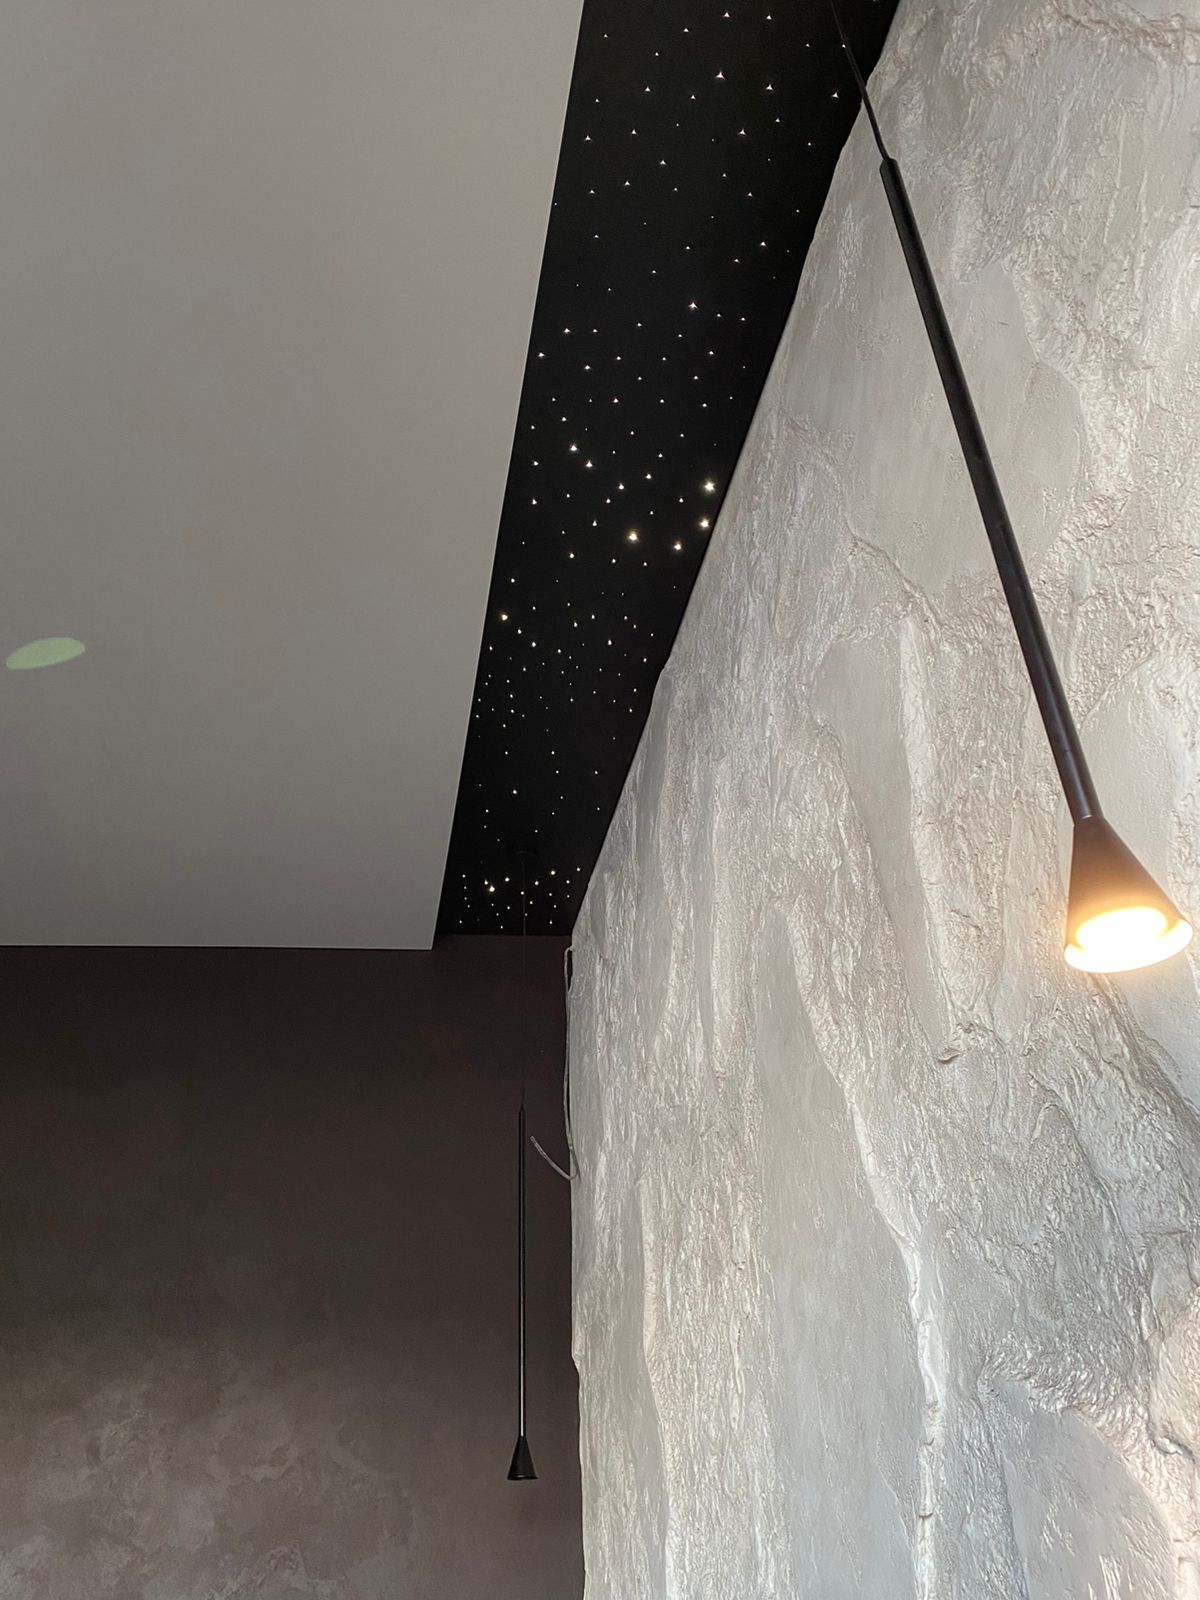 потолок "Звездное небо", установленный в спальне нашего заказчика в Краснодаре. На потолке дизайнерский подвес.